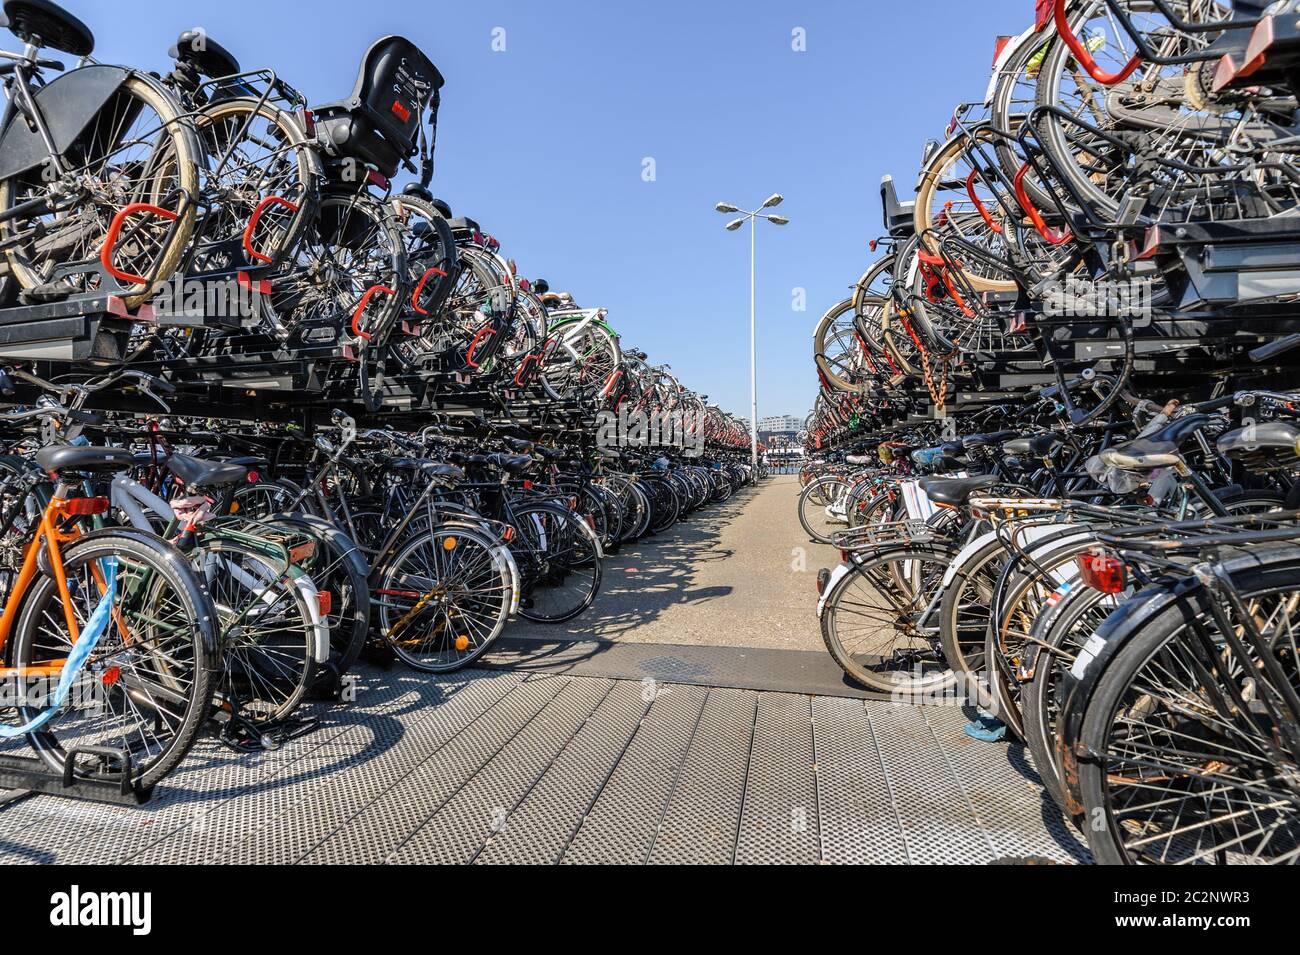 AMSTERDAM, HOLLANDE - AOÛT 01 : gare centrale d'Amsterdam. Beaucoup de vélos garés devant la gare centrale le 01 août 20 Banque D'Images